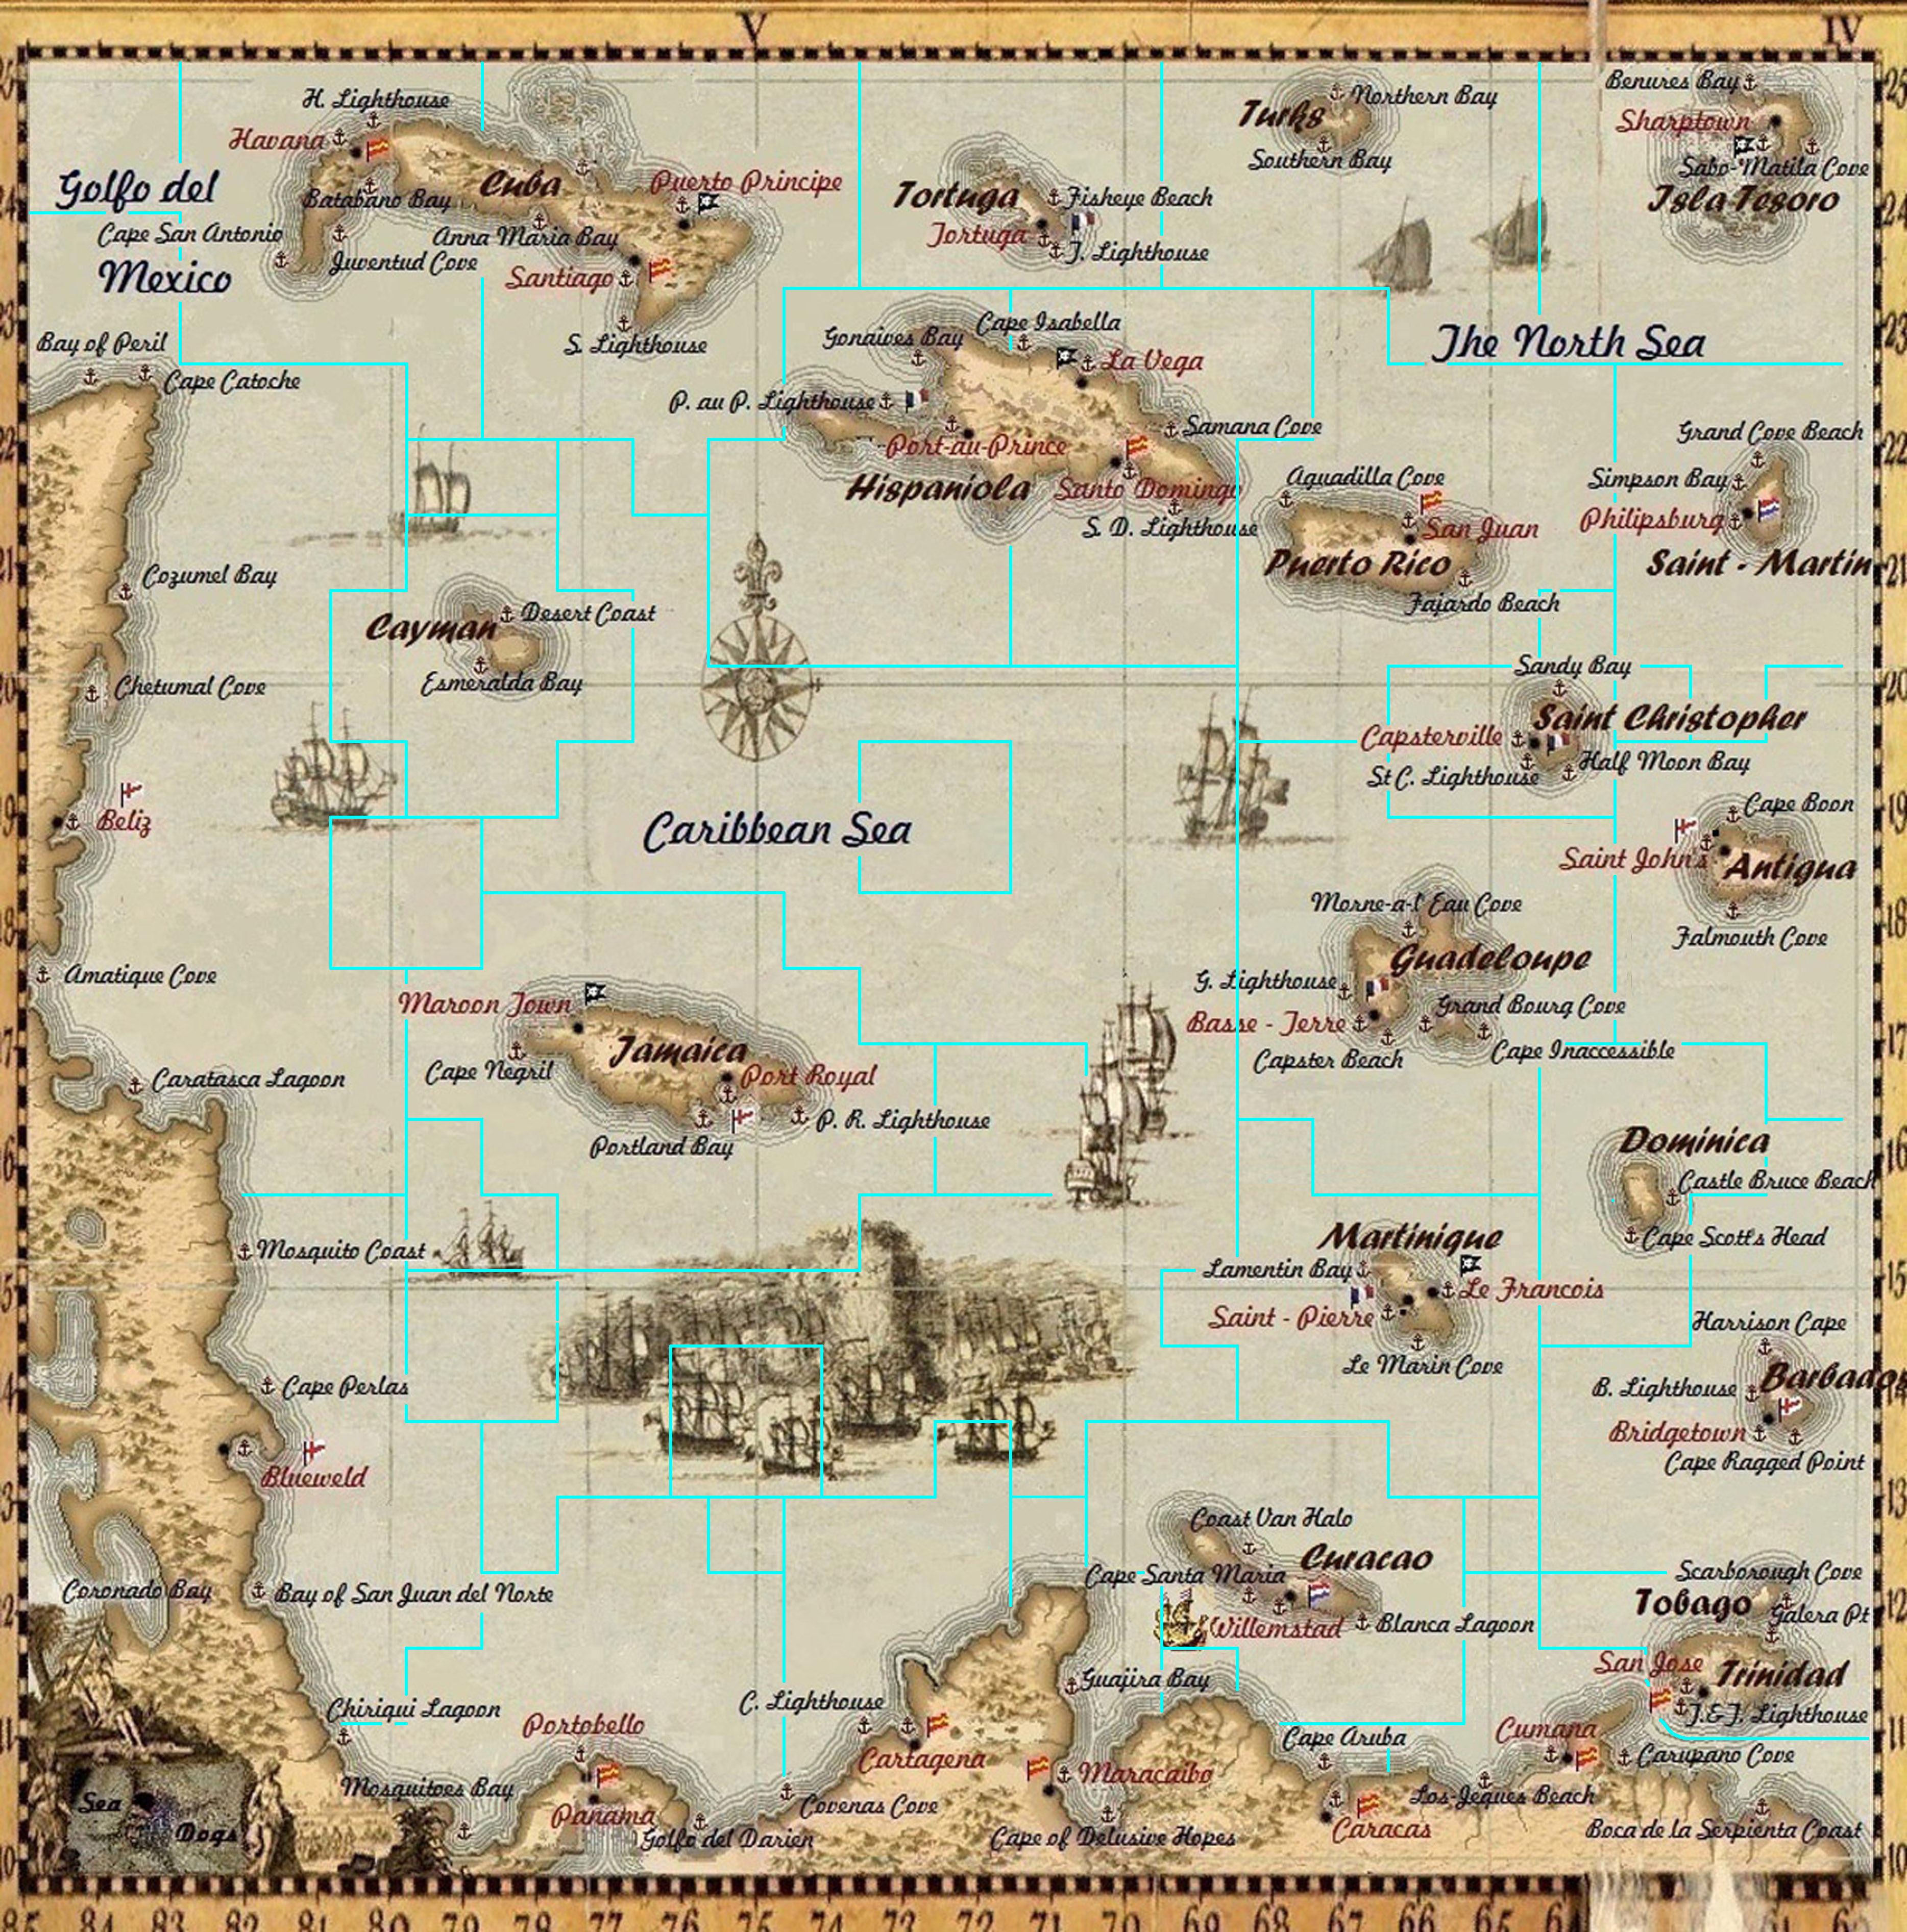 steam download region map